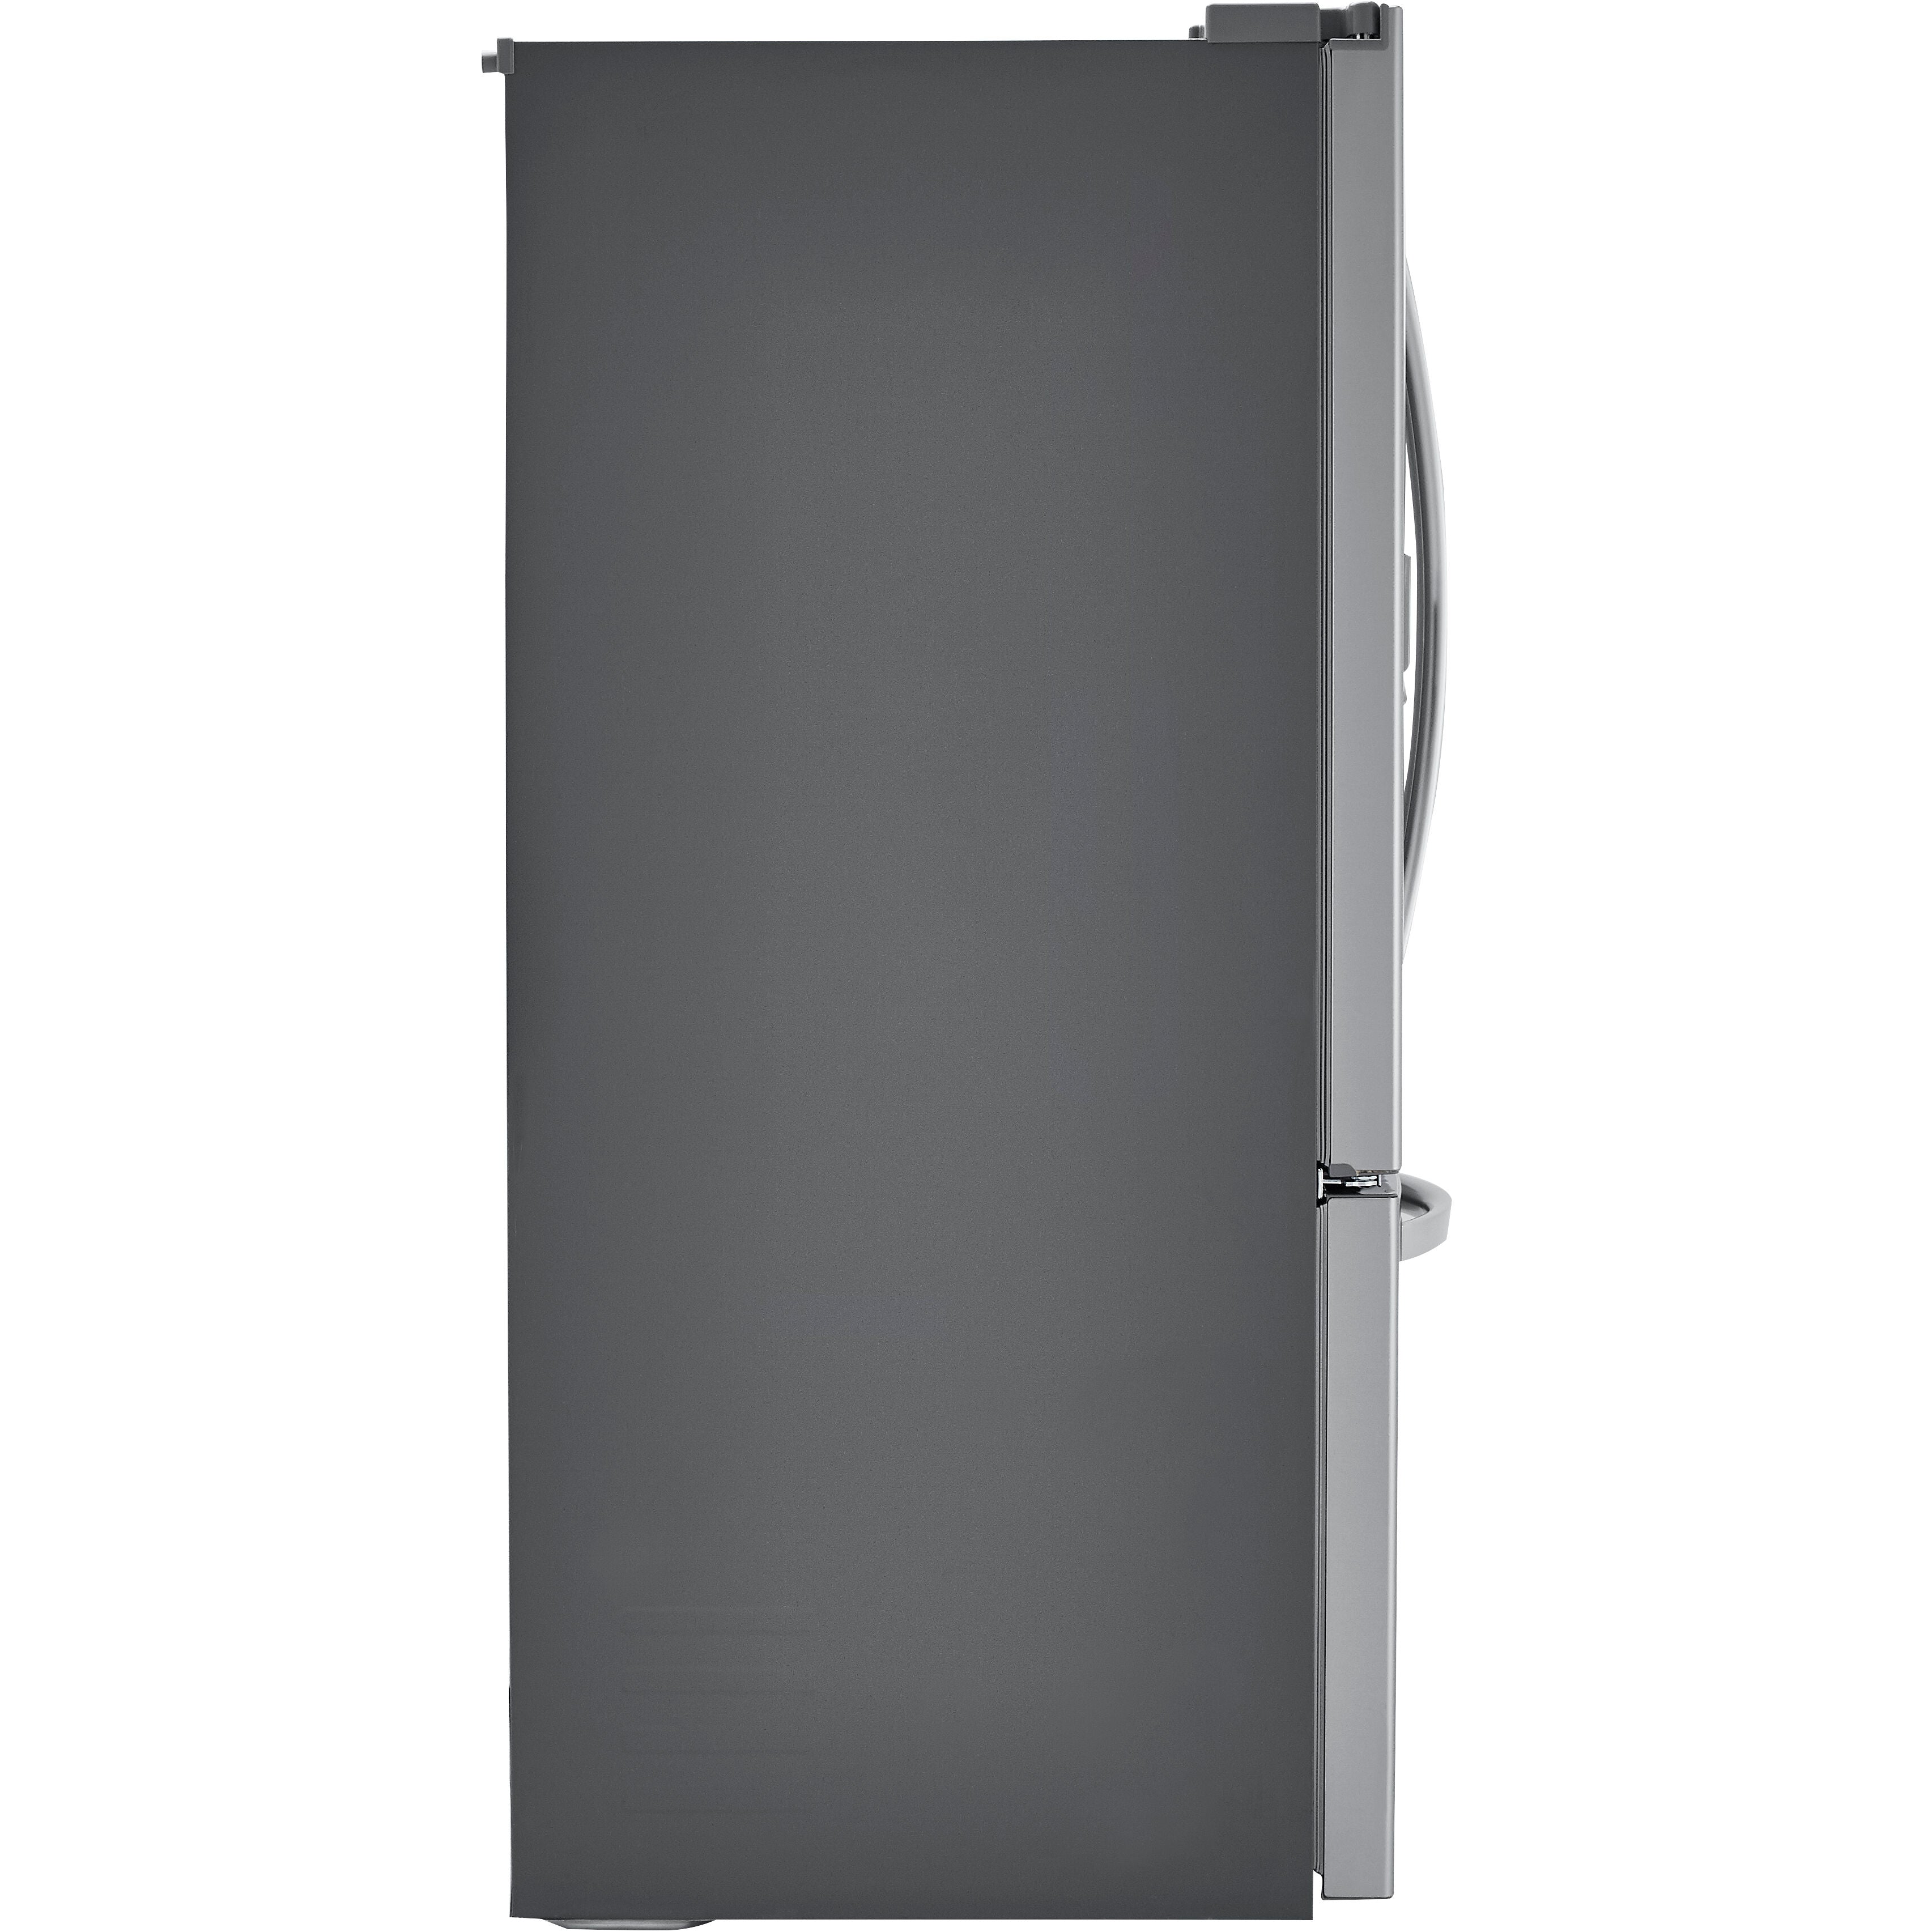 LG 33 Inch 3-Door French Door Refrigerator in Stainless Steel 25 Cu. Ft. (LRFXS2503S)